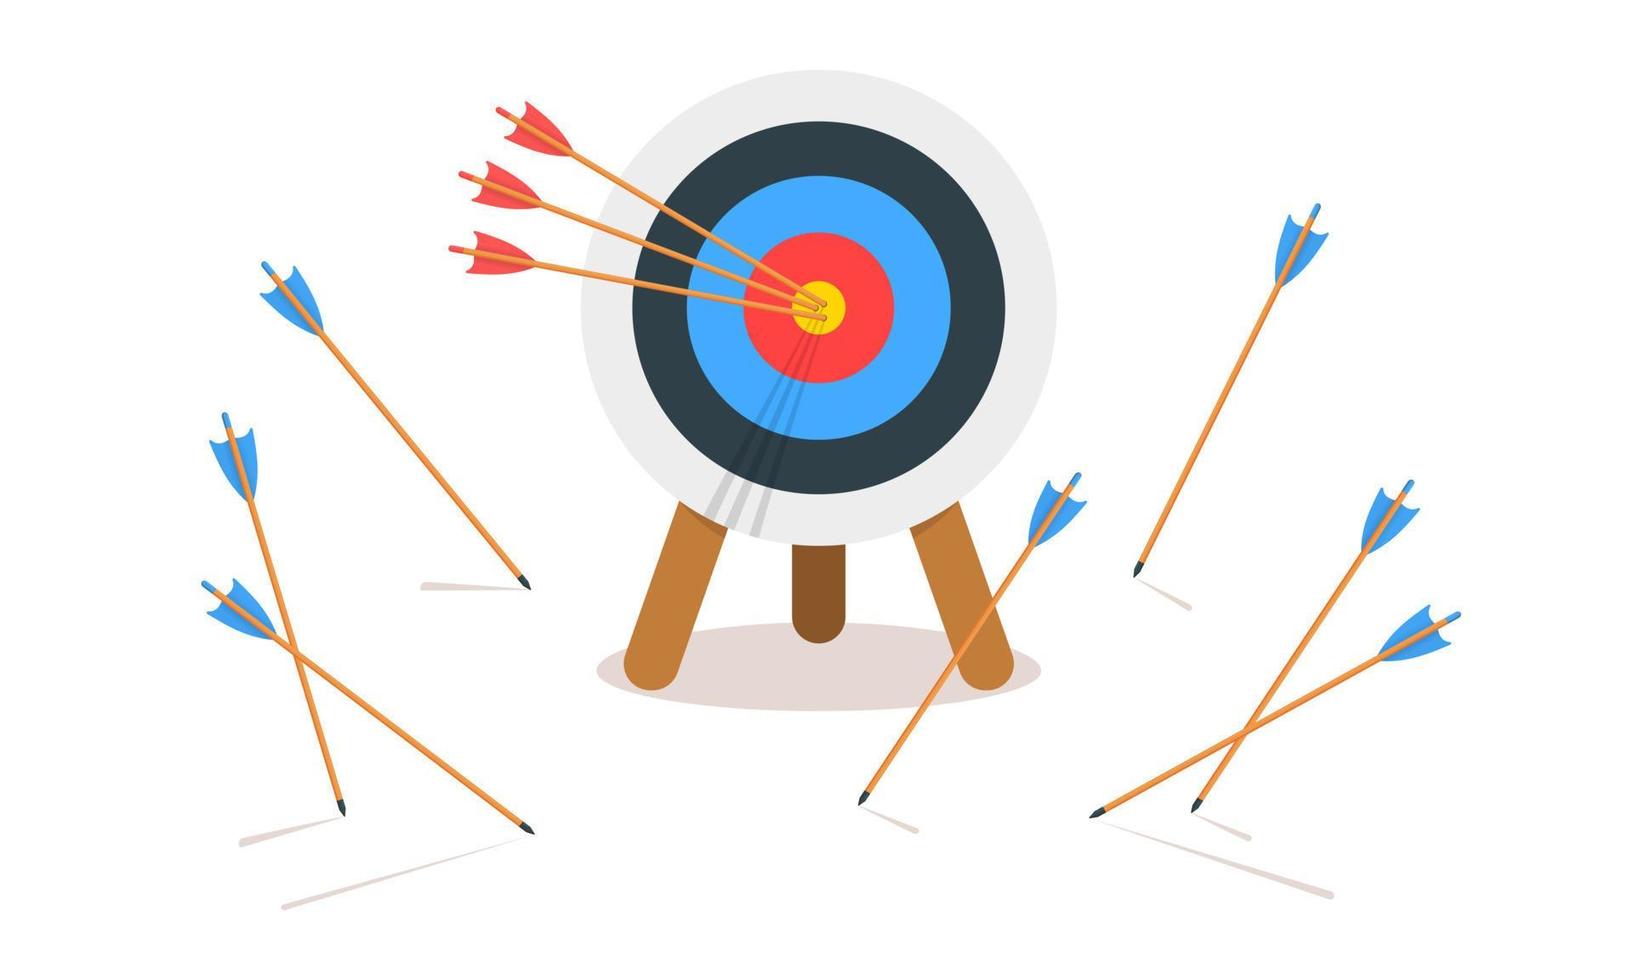 Zielring für das Bogenschießen mit drei treffenden Bullseyes und vielen verfehlten Pfeilen. Idee zur Zielerreichung. Symbol für geschäftlichen Erfolg und Misserfolg. effizienz- und genauigkeitskonzept vektor